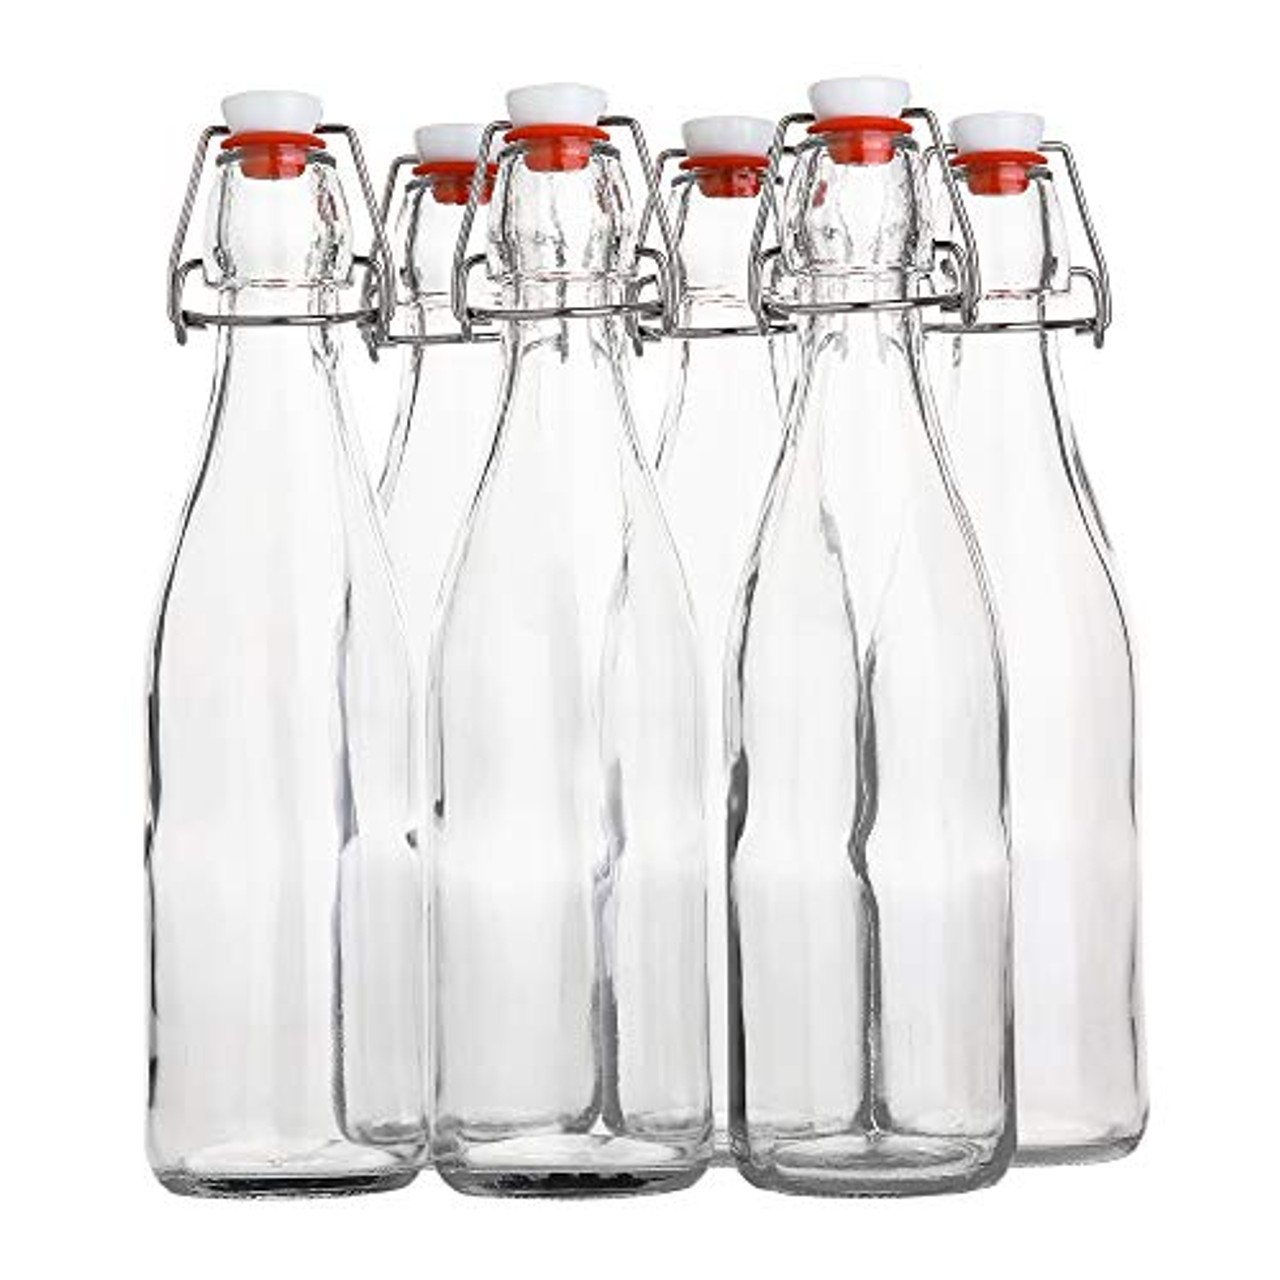 Reusable Glass Bottle